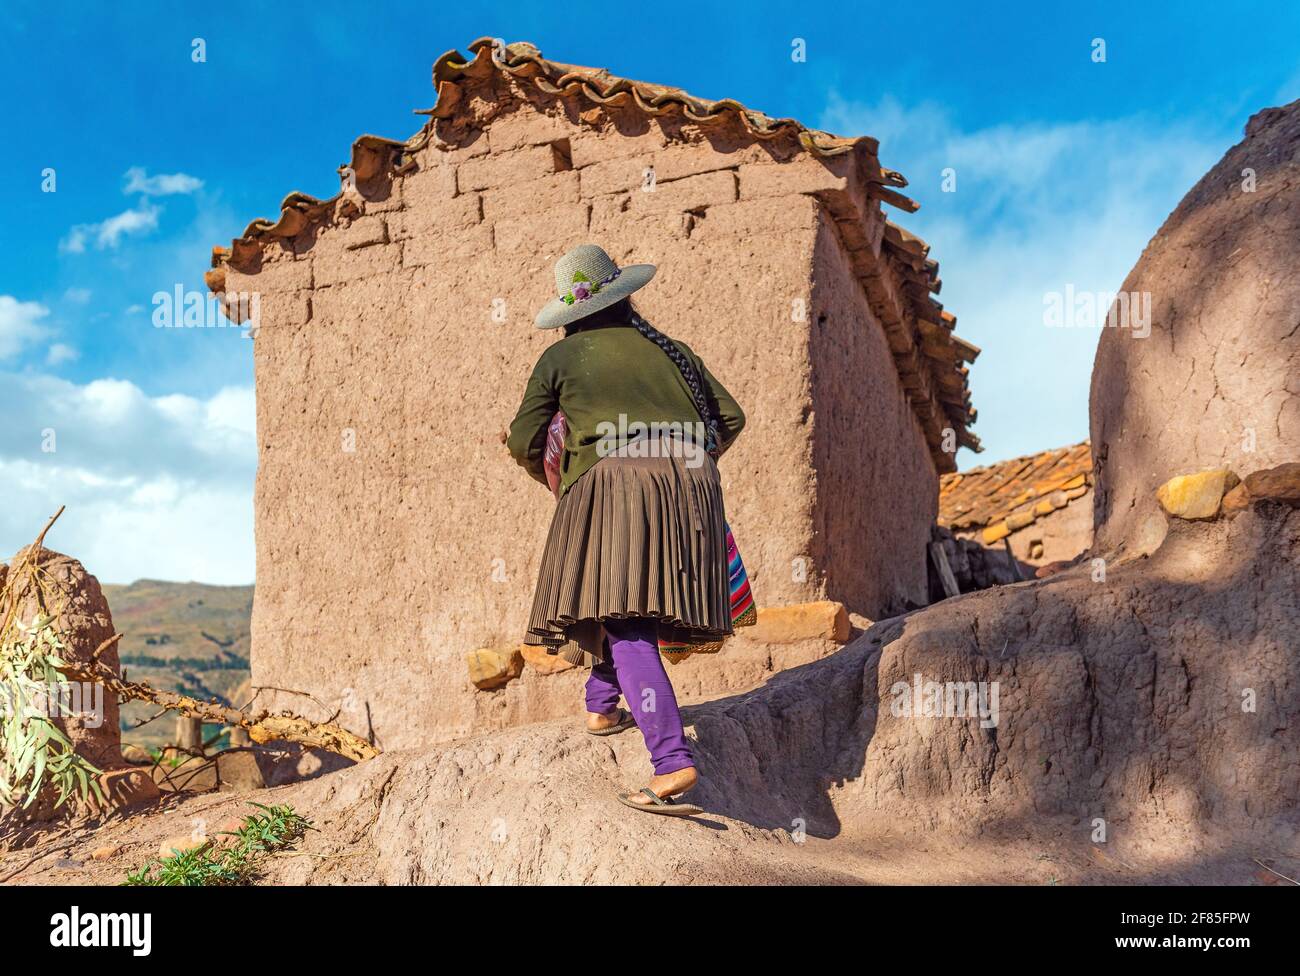 Bolivianische Jalq'a indigene Frau in traditioneller Kleidung, die zu ihrem adobe-Haus, Potolo, Sucre-Abteilung, Bolivien, geht. Stockfoto